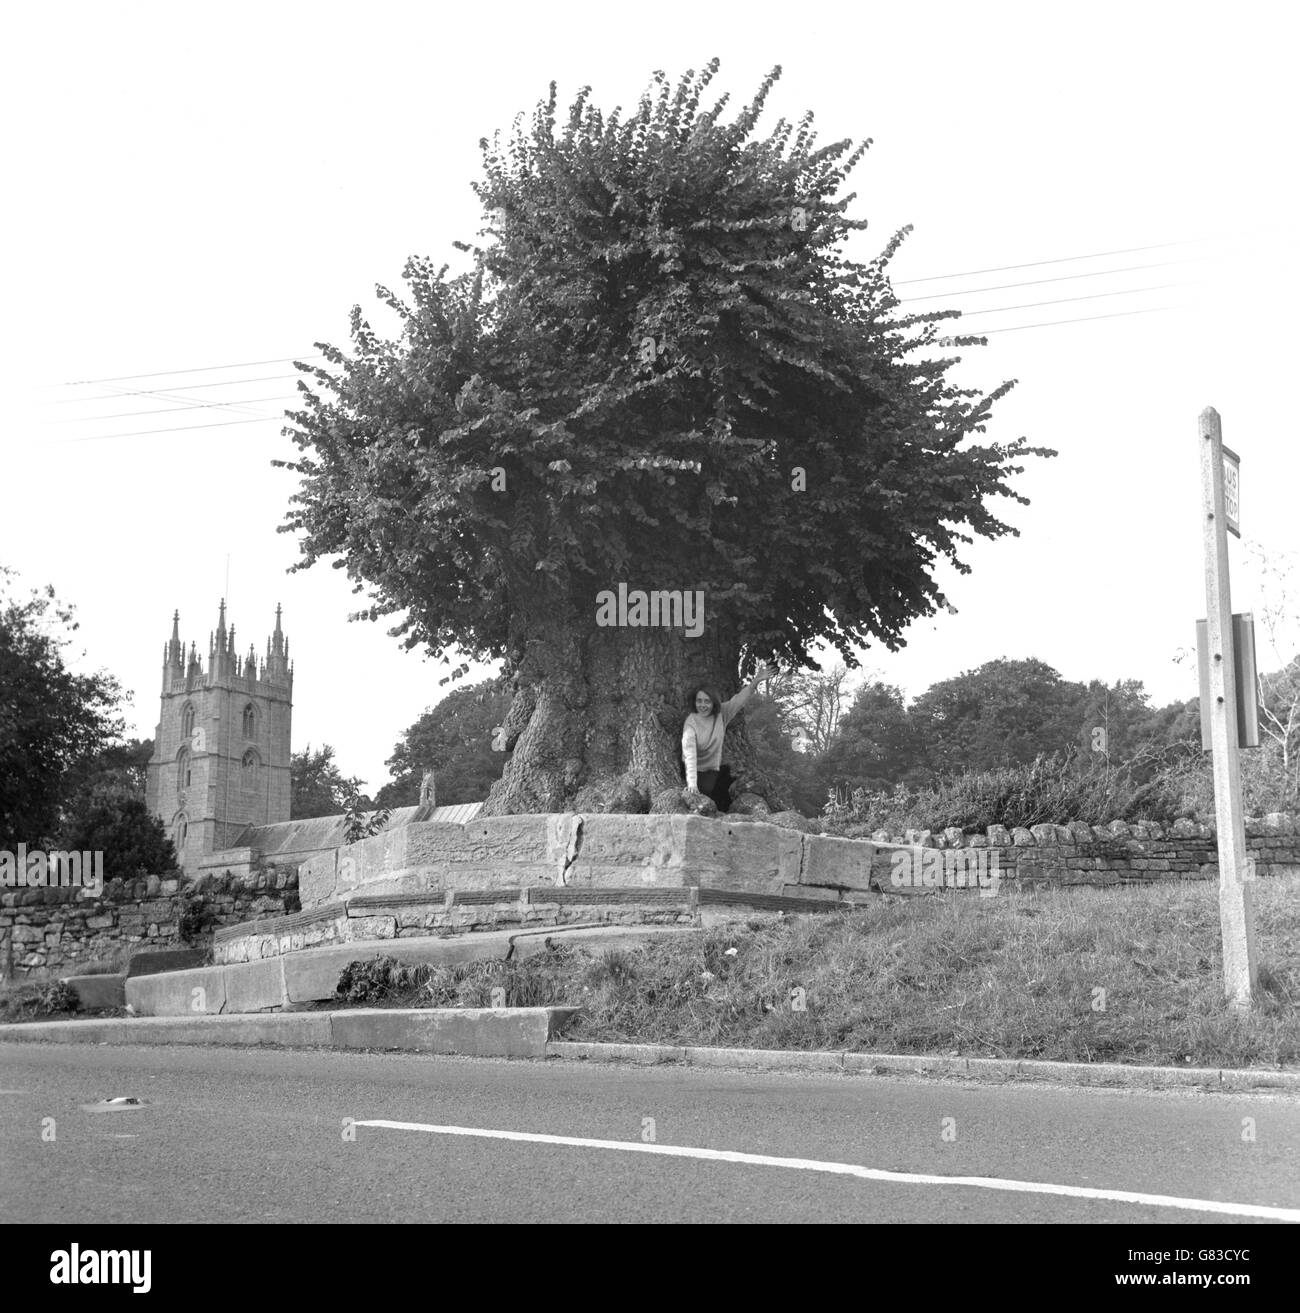 Un arbre de wych-elm à Wraxall dans le Somerset, qui pousse sur le site de la croix du vieux village depuis au moins 300 ans. Il est creux, avec assez d'espace à l'intérieur pour 10 personnes. Julie Symmons de Clevedon est vue grimper hors du petit trou dans le tronc. Banque D'Images